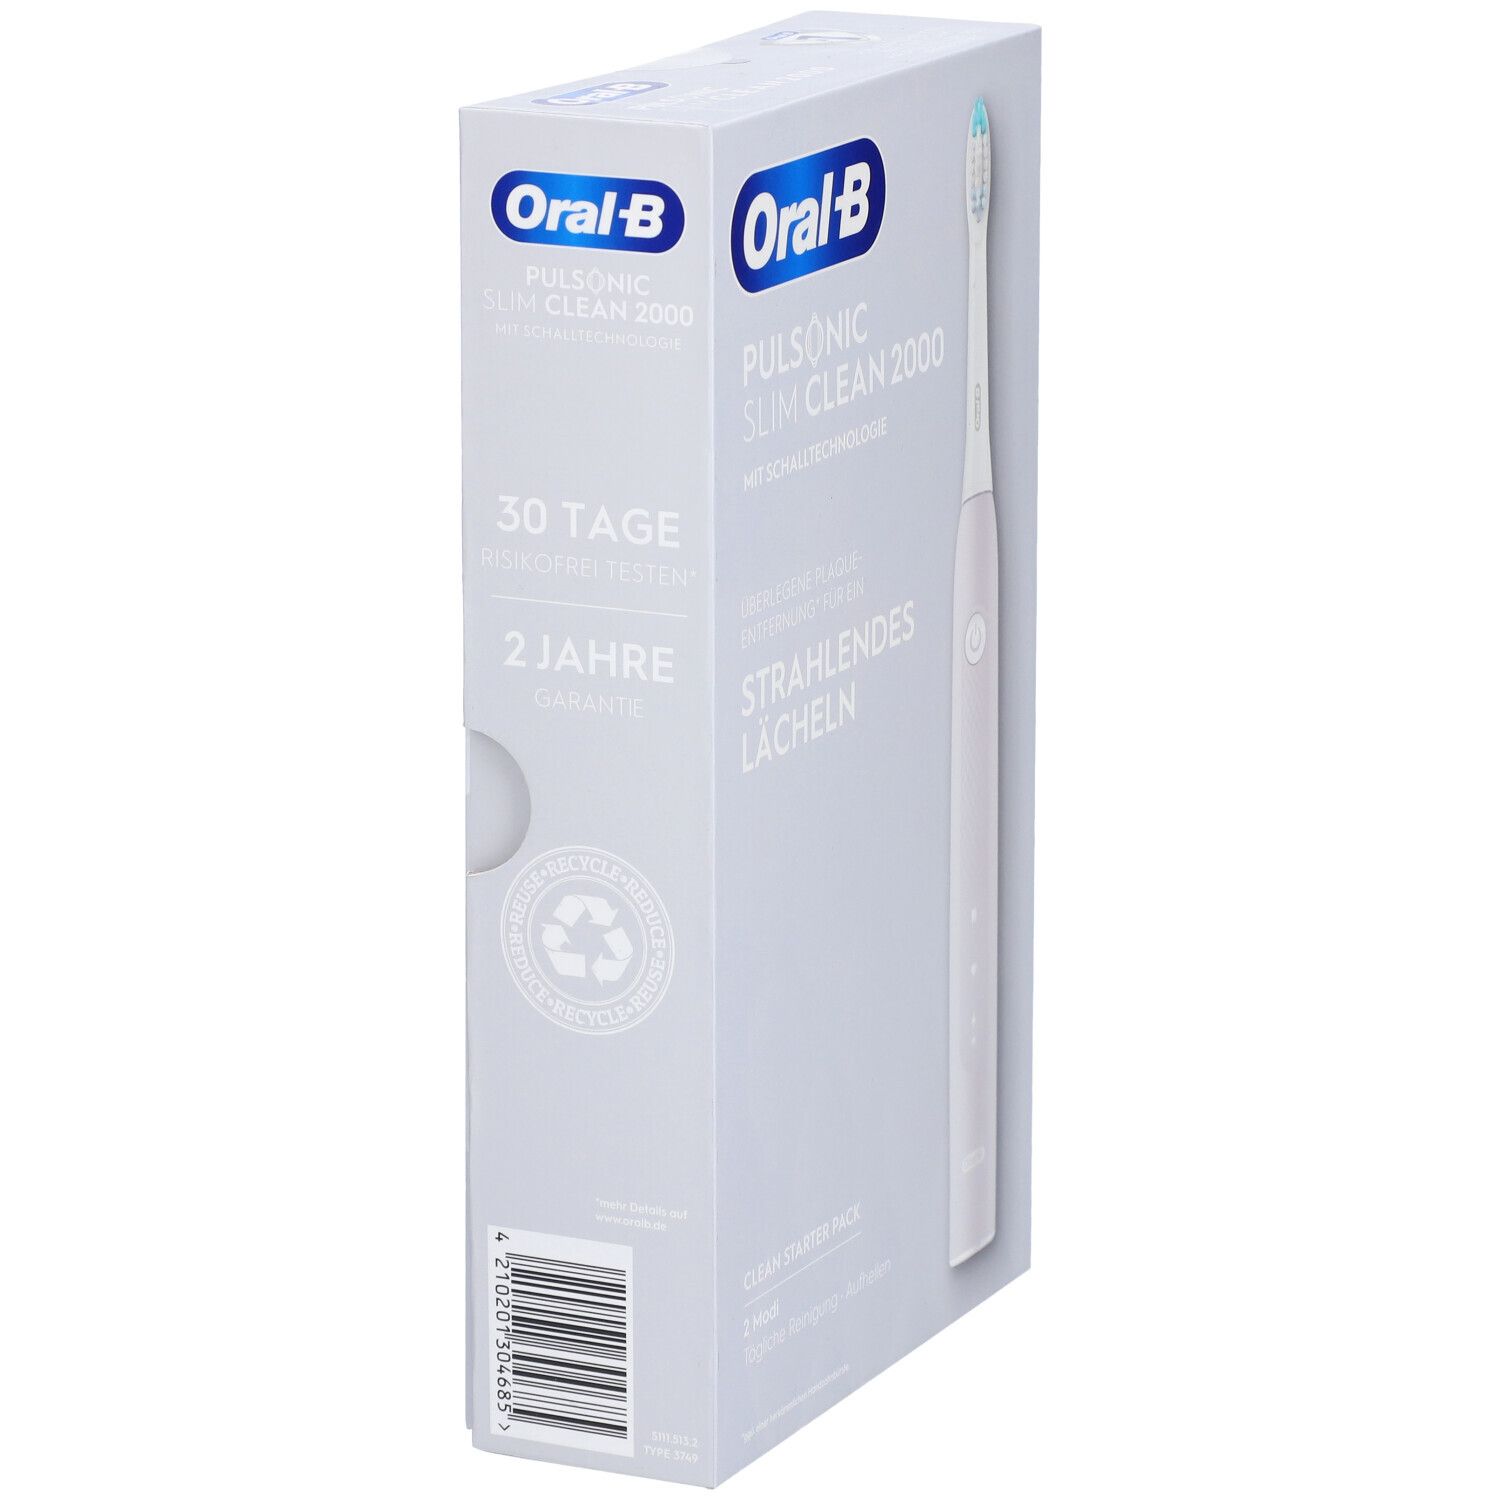 ORAL-B Pulsonic Slim Clean 2000 Elektrische Zahnbürste grau